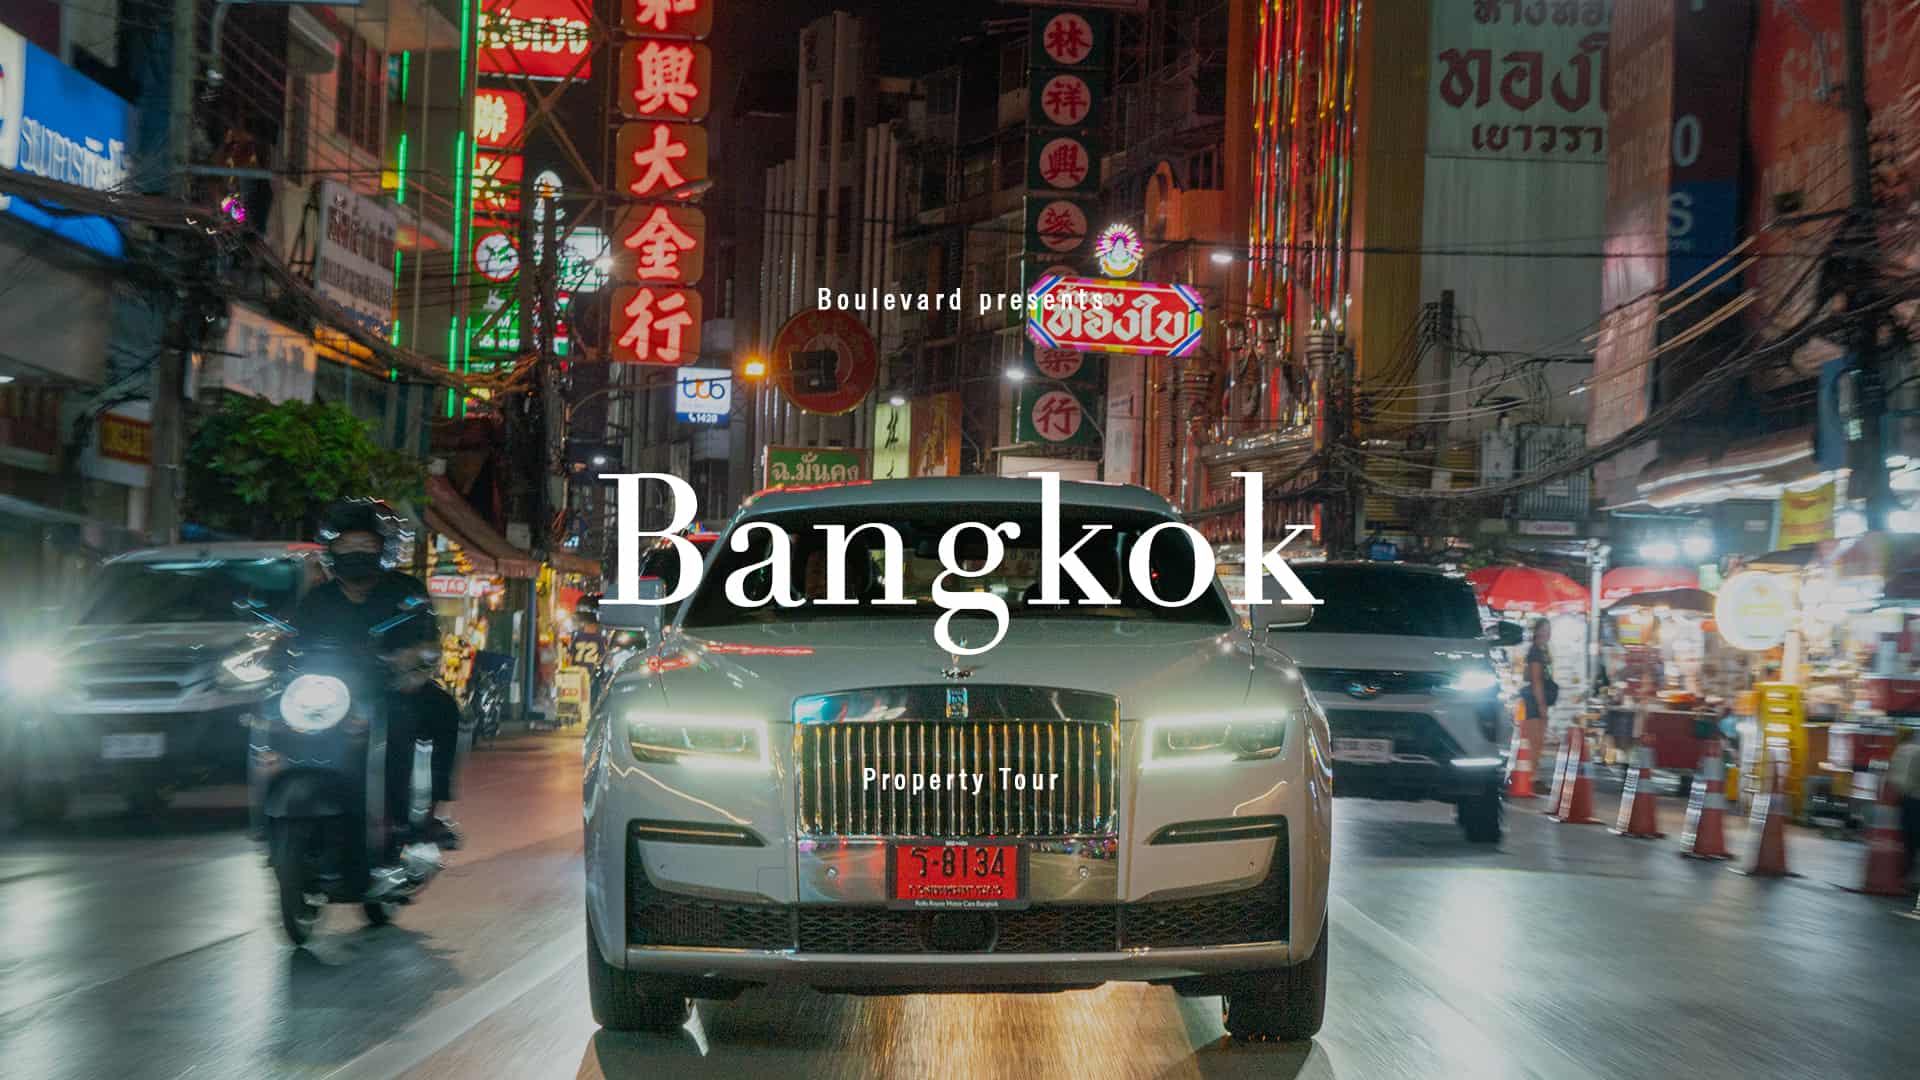 Bangkok property tour